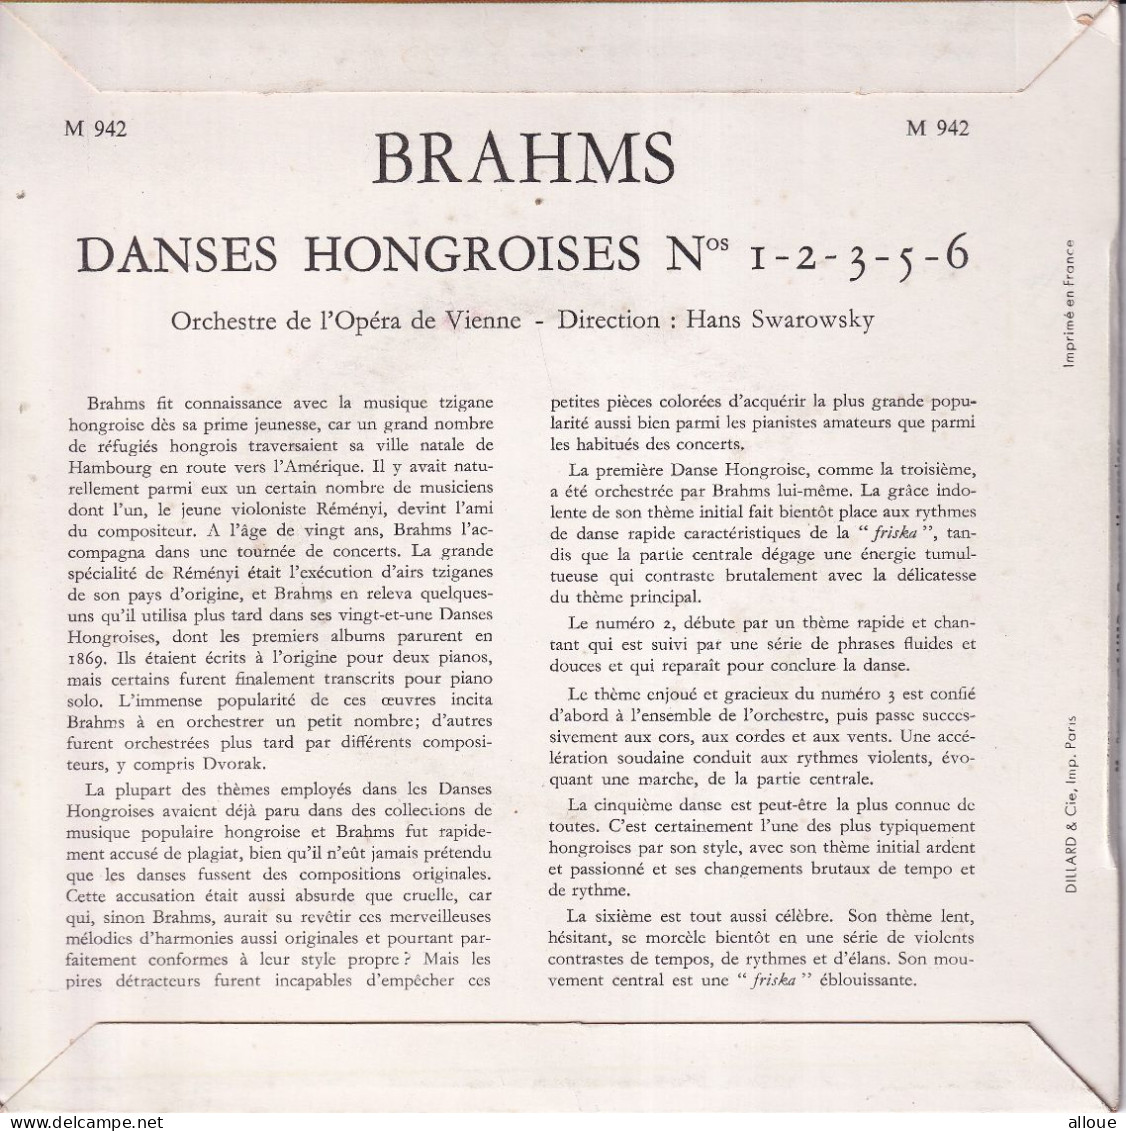 ORCHESTRE DE L'OPERA DE VIENNE - DIRECTION HANS SWAROWSKY - FR EP - BRAHMS - DANCES HONGROISES - Classical